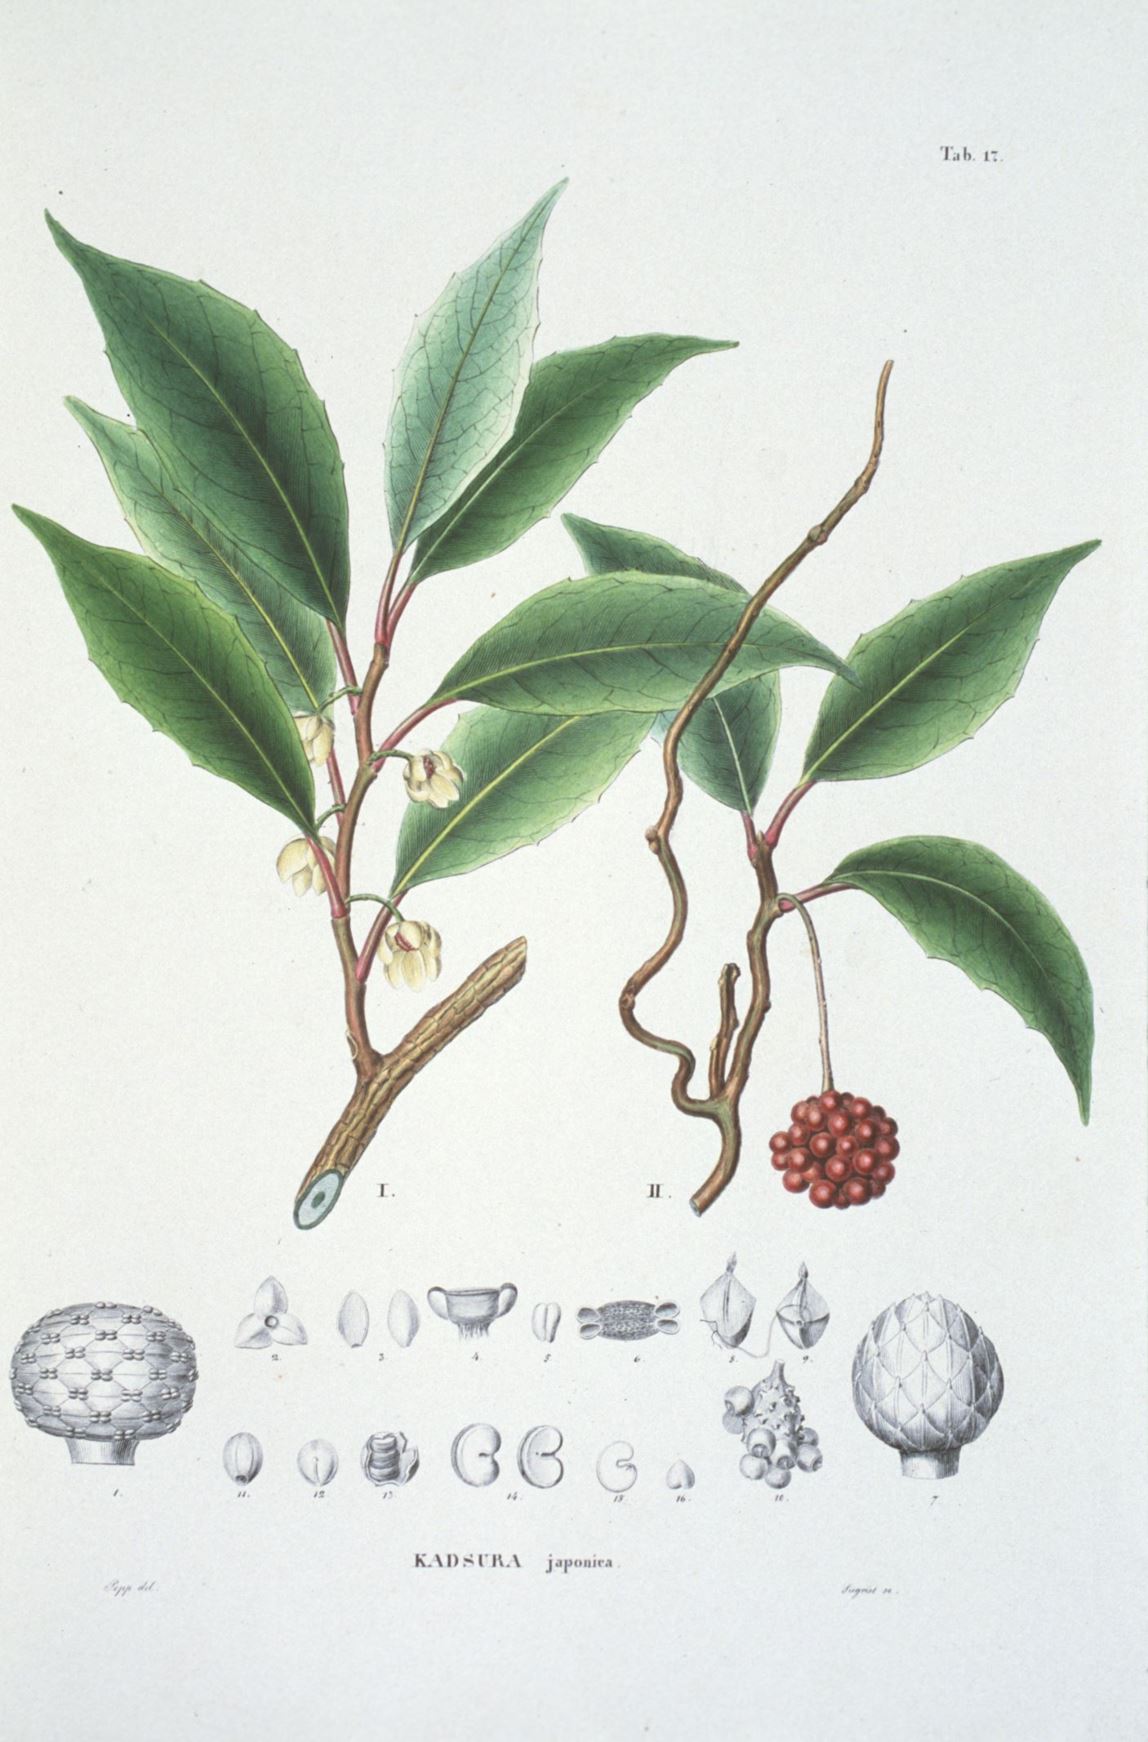 Kadsura japonica - kadsura vine, evergreen magnolia vine, サネカズラ sane-kazura